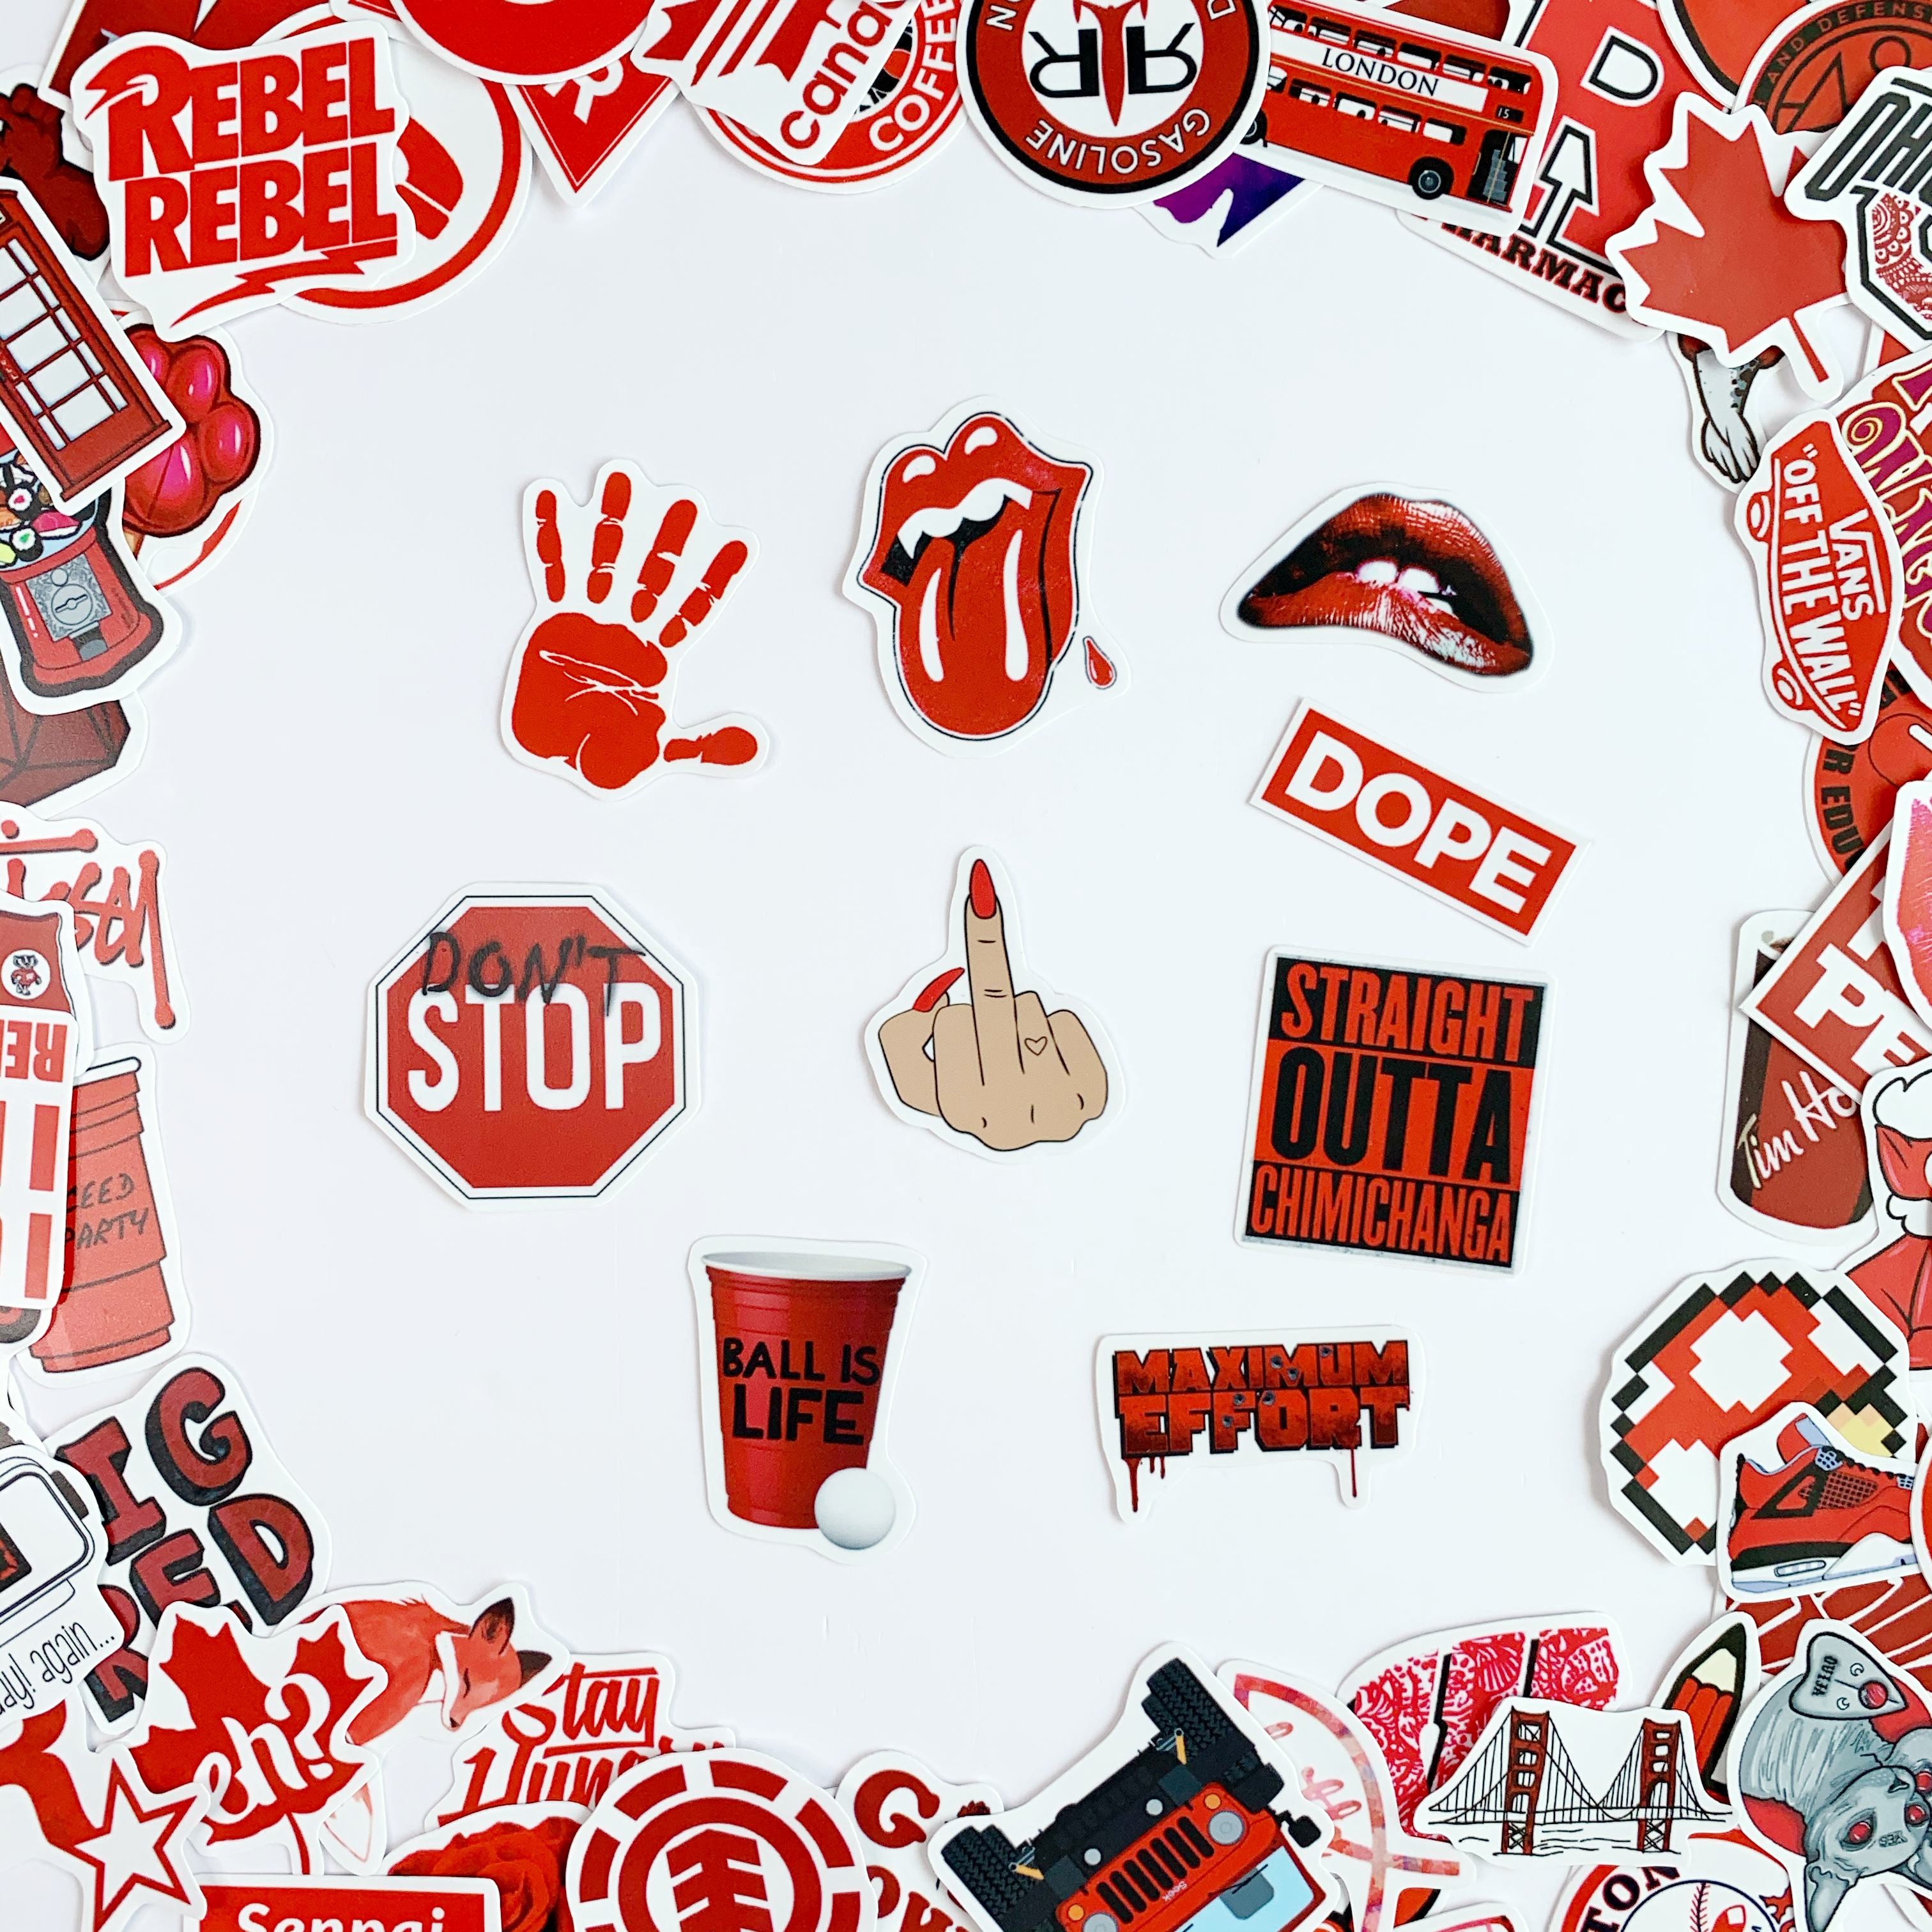 Sticker Màu Đỏ Red Ngẫu Nhiên - Chất Liệu PVC Chất Lượng Cao Chống Nước - Kích Thước 4-8cm